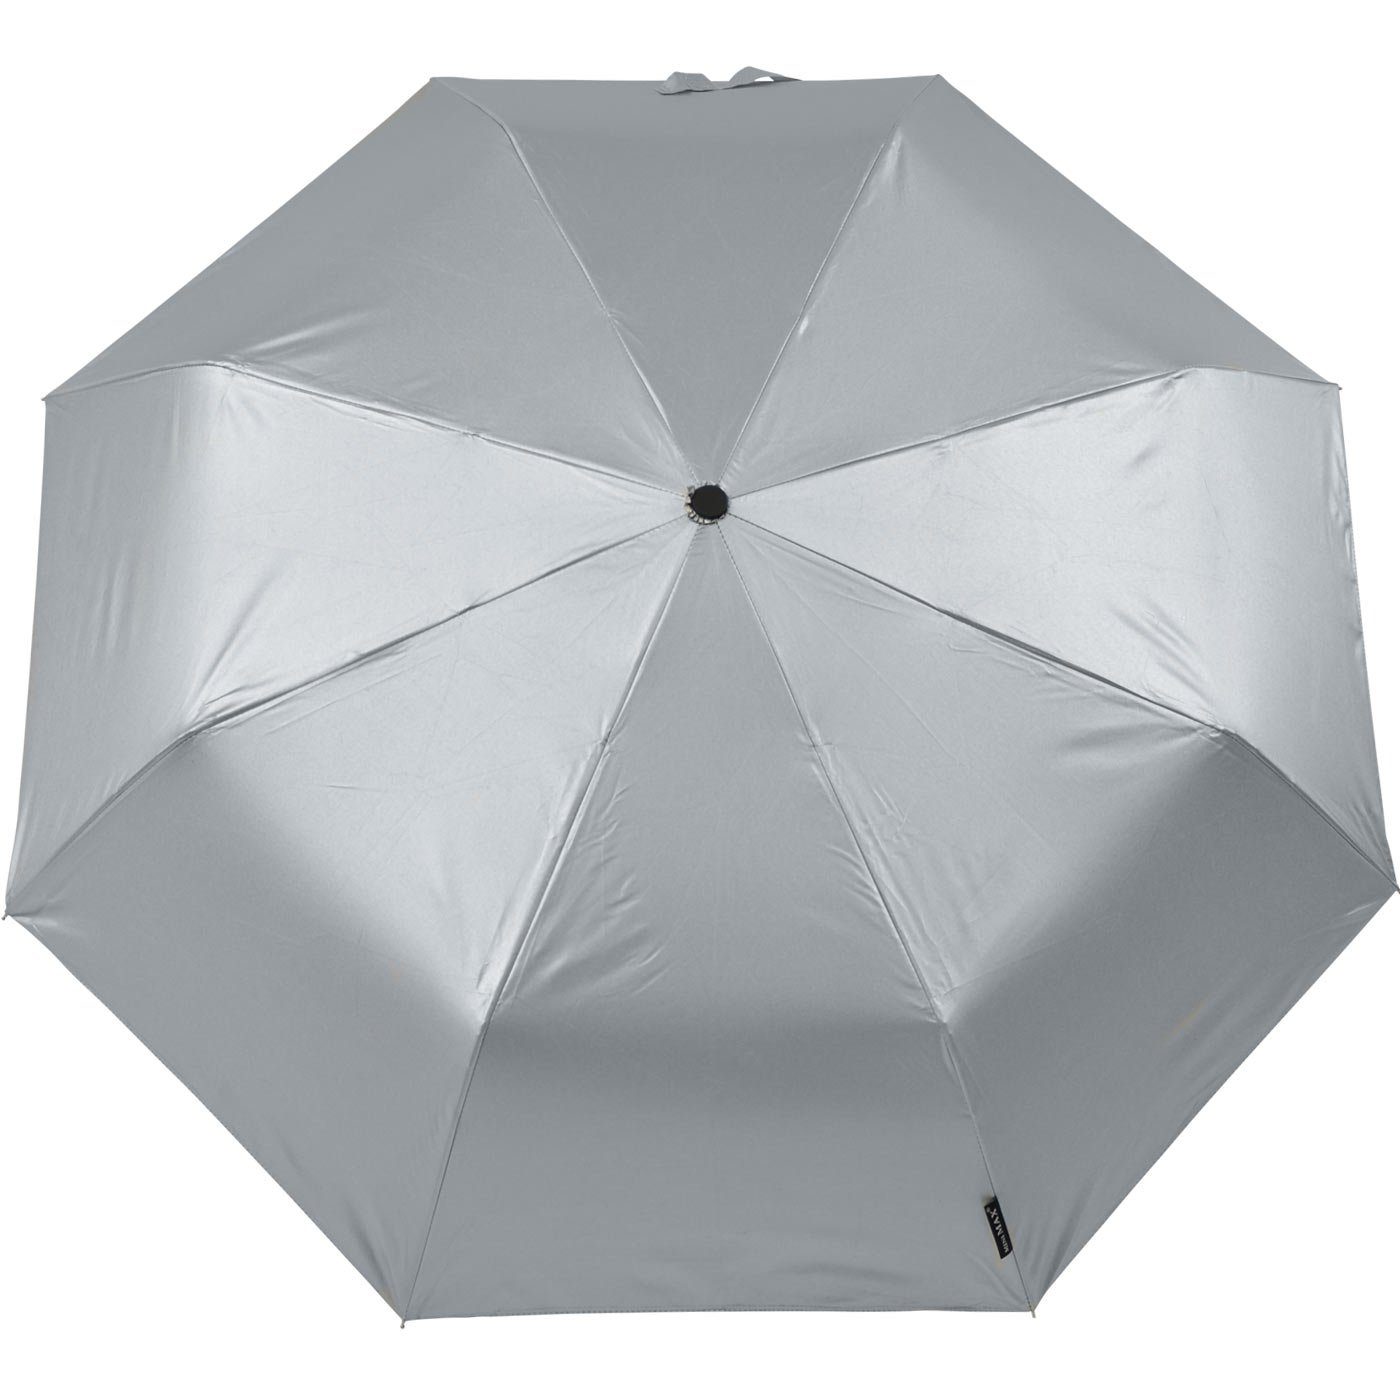 passt Handöffner, Impliva miniMAX® in Taschenregenschirm kleiner silber Schirm leichter jjede Tasche